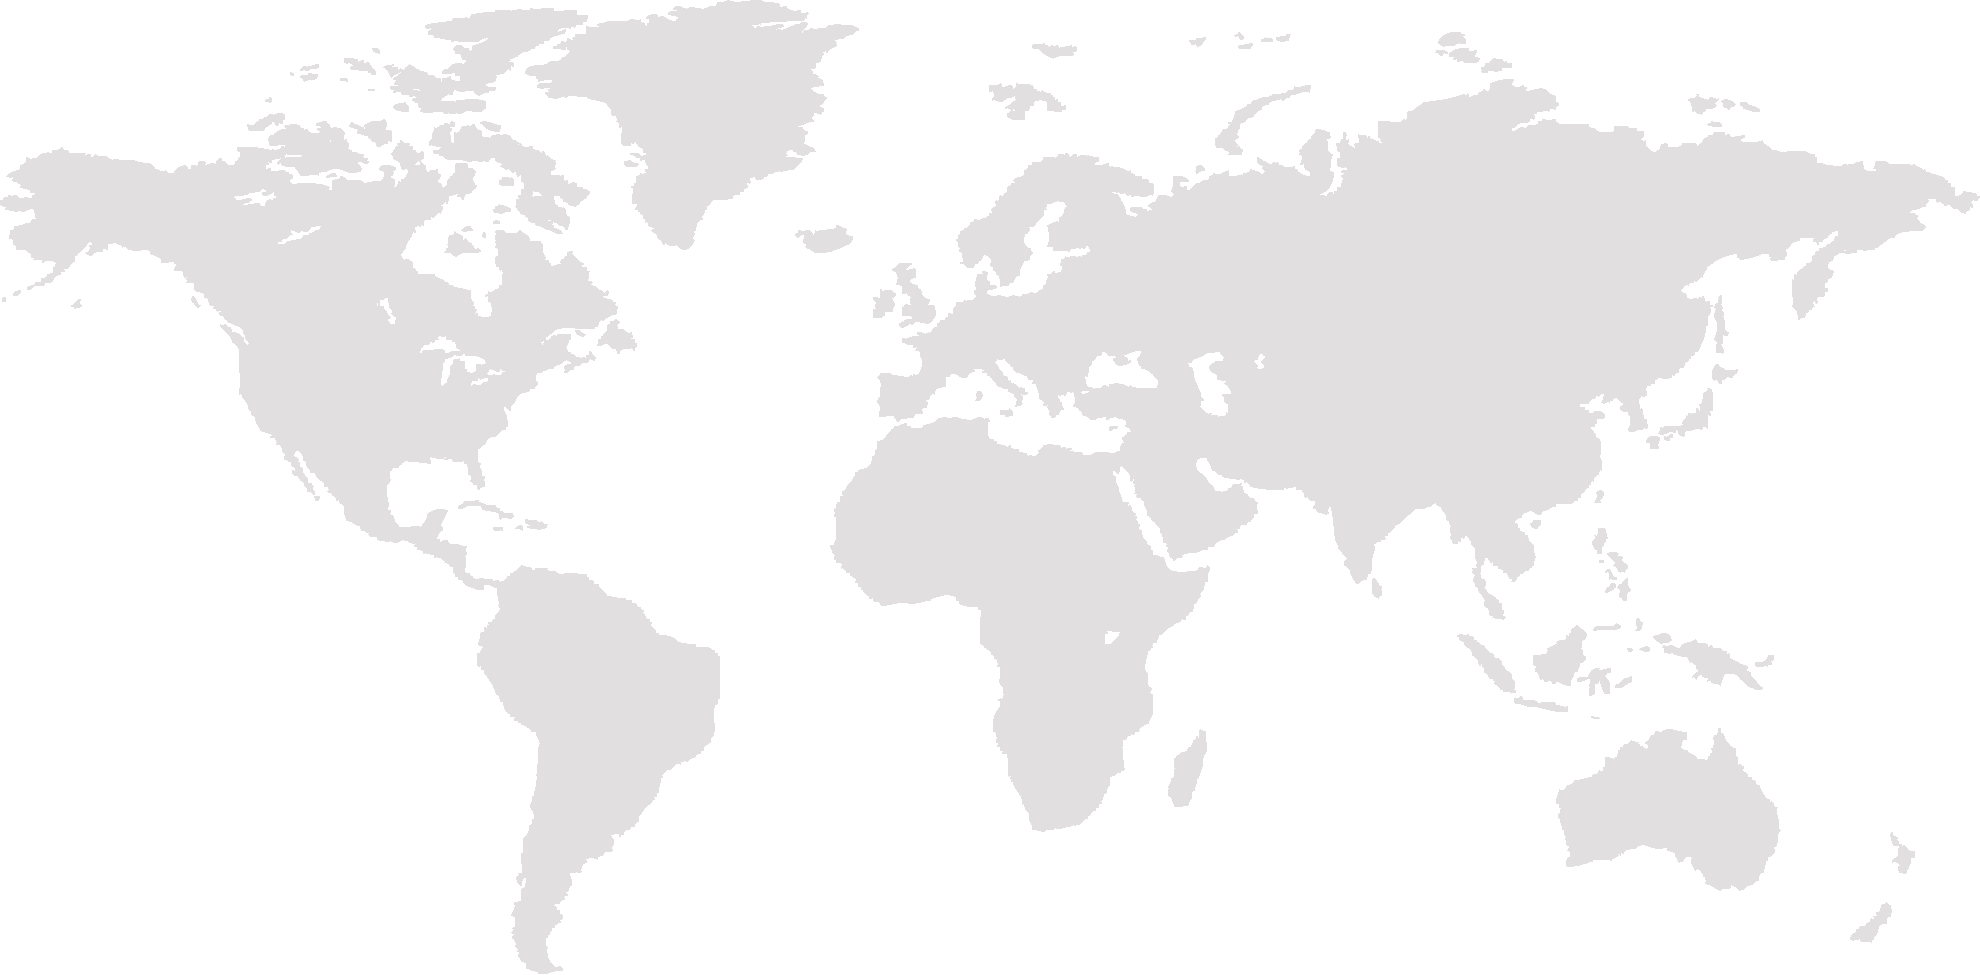 แสดงแผนที่โลก